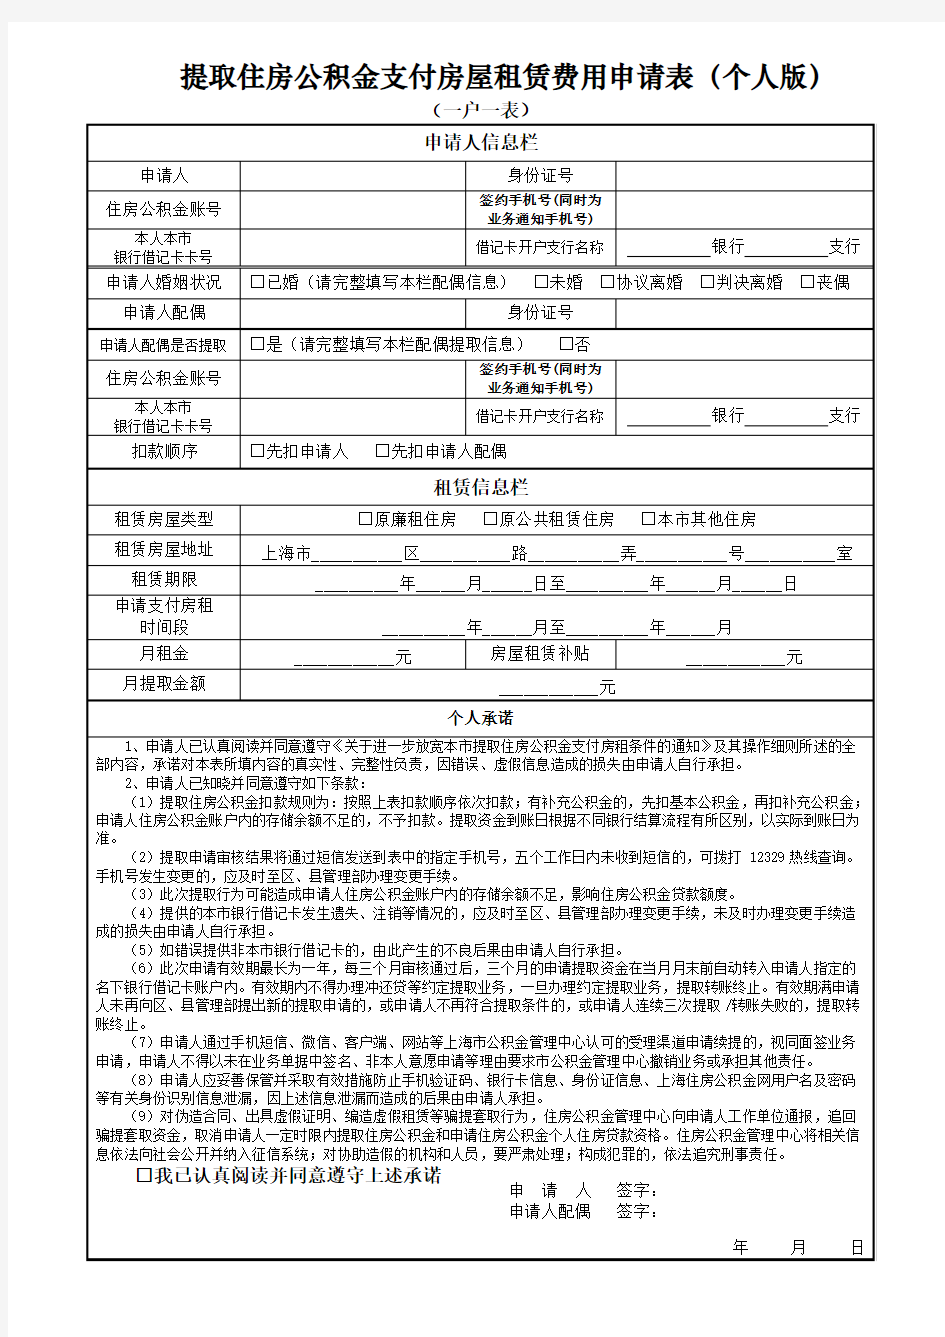 提取住房公积金支付房屋租赁费用申请表(个人版)上海公积金官网版本